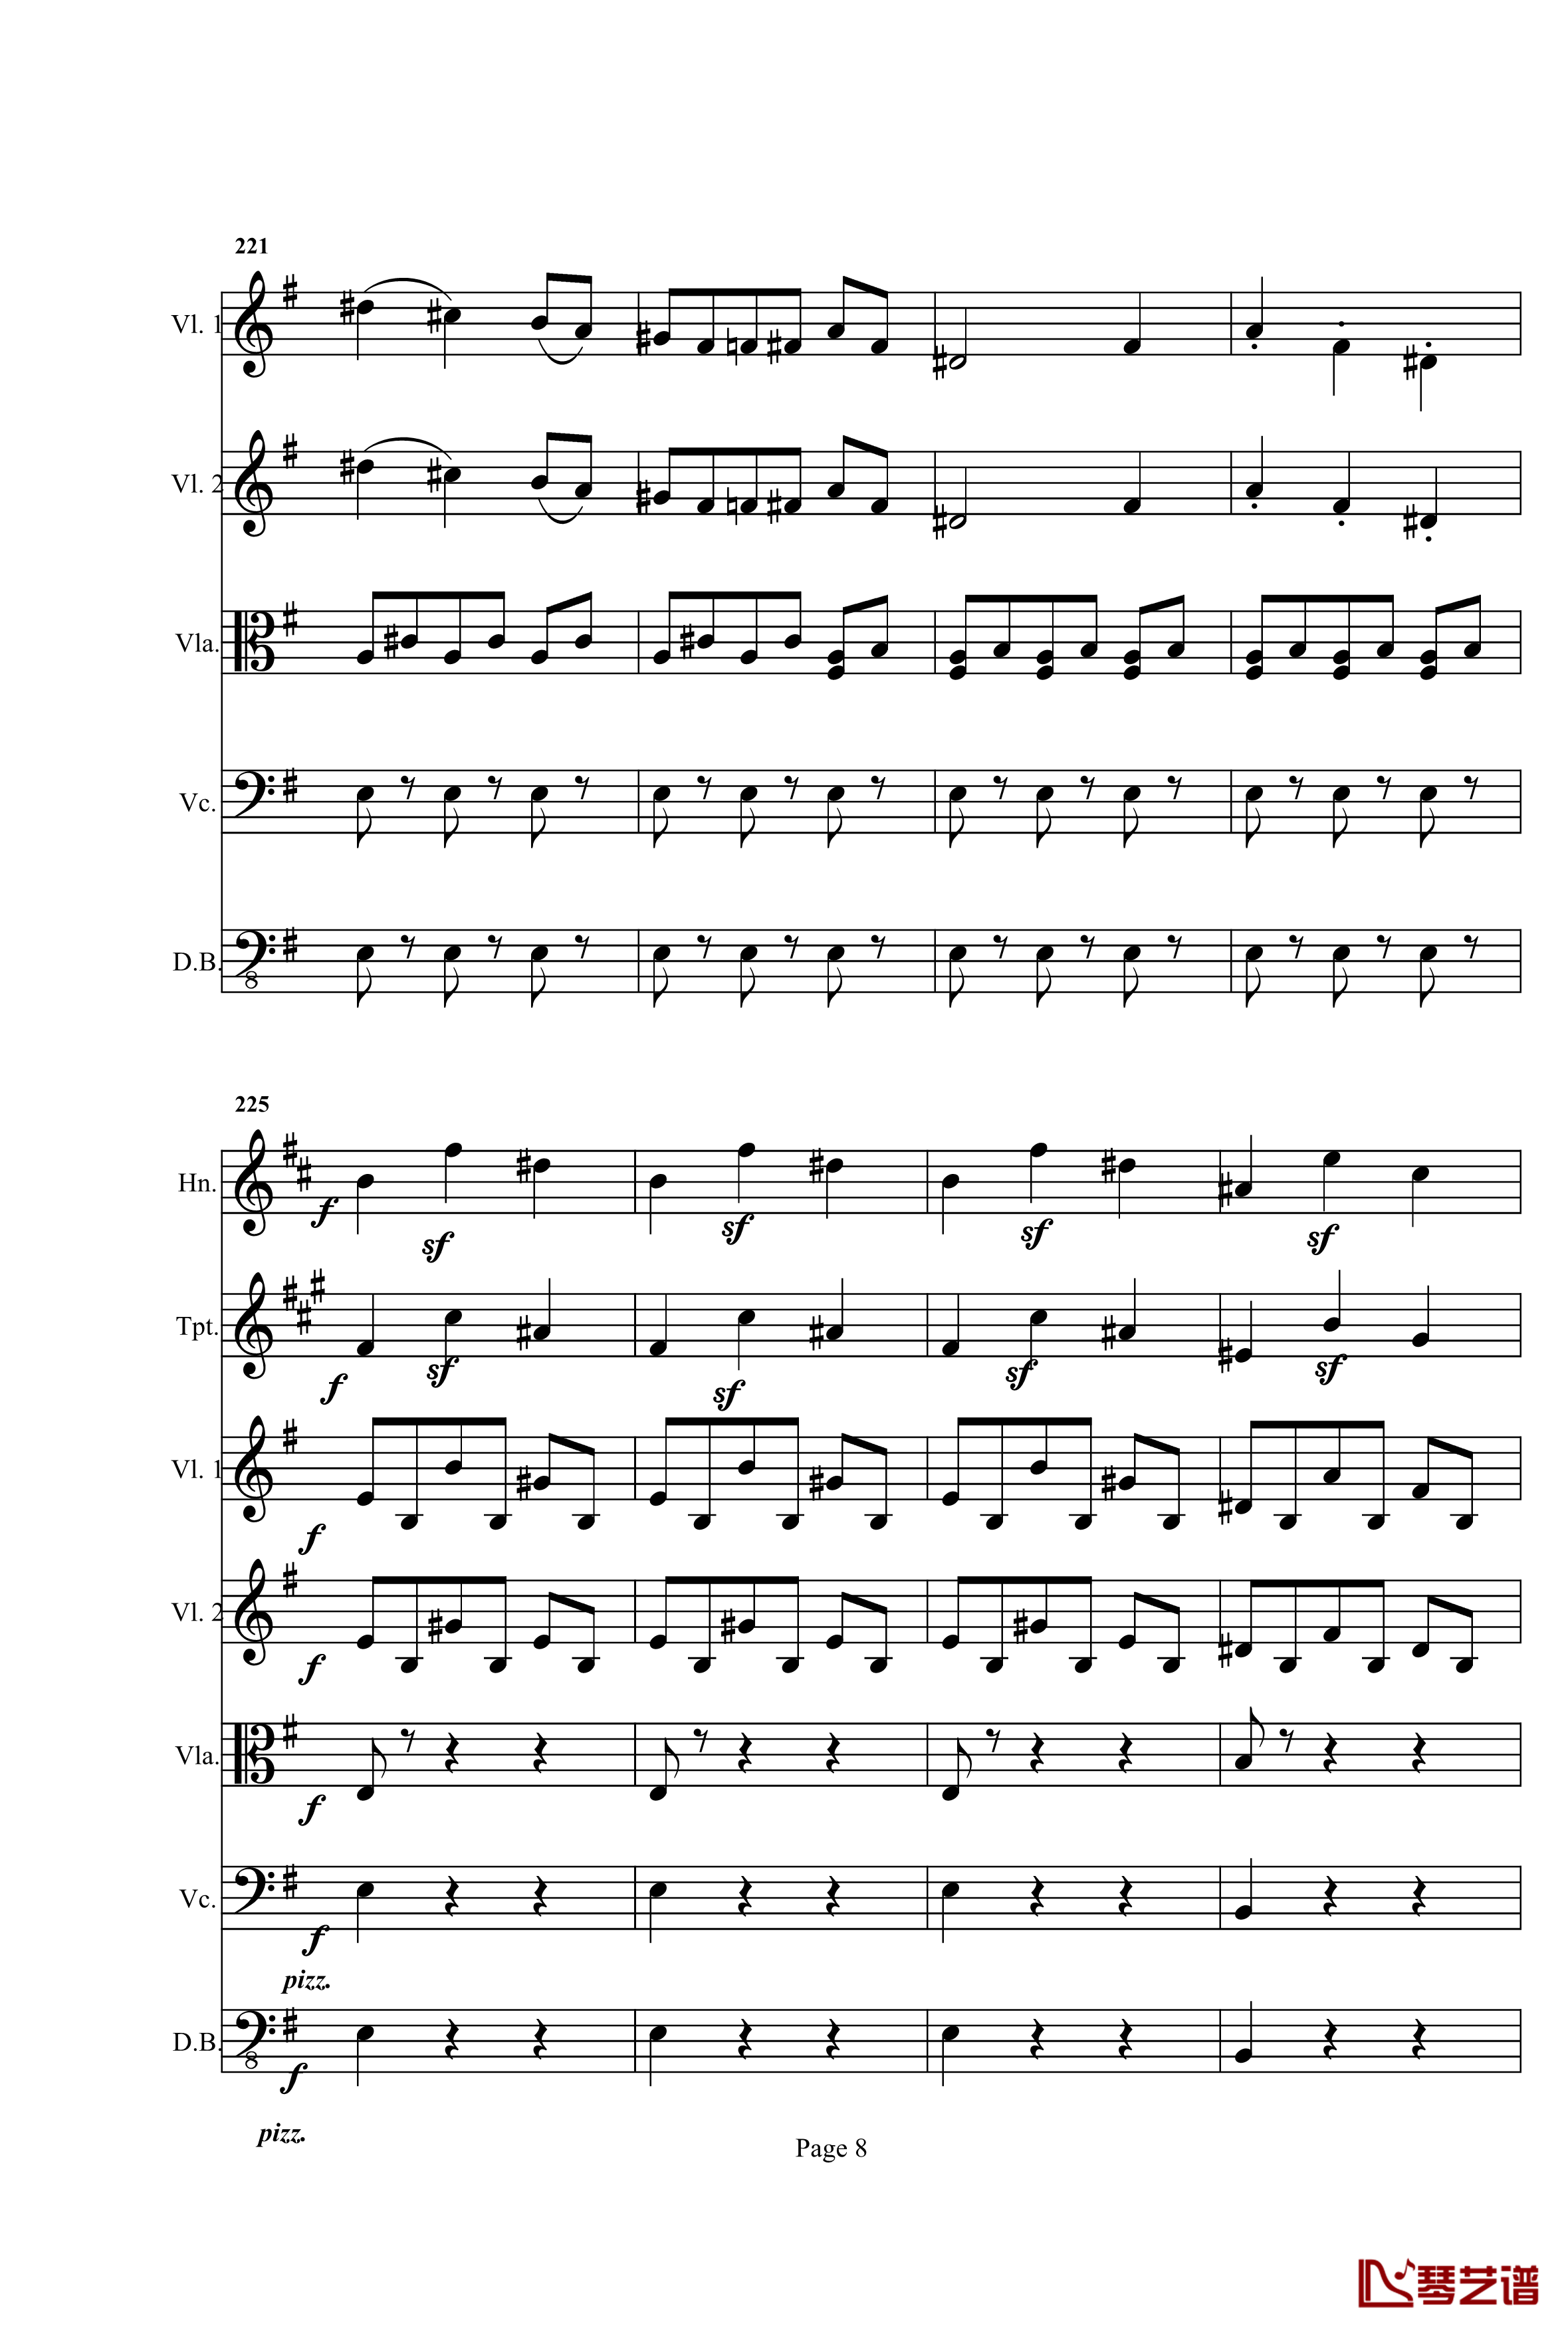 奏鸣曲之交响钢琴谱-第25首-Ⅰ-贝多芬-beethoven8